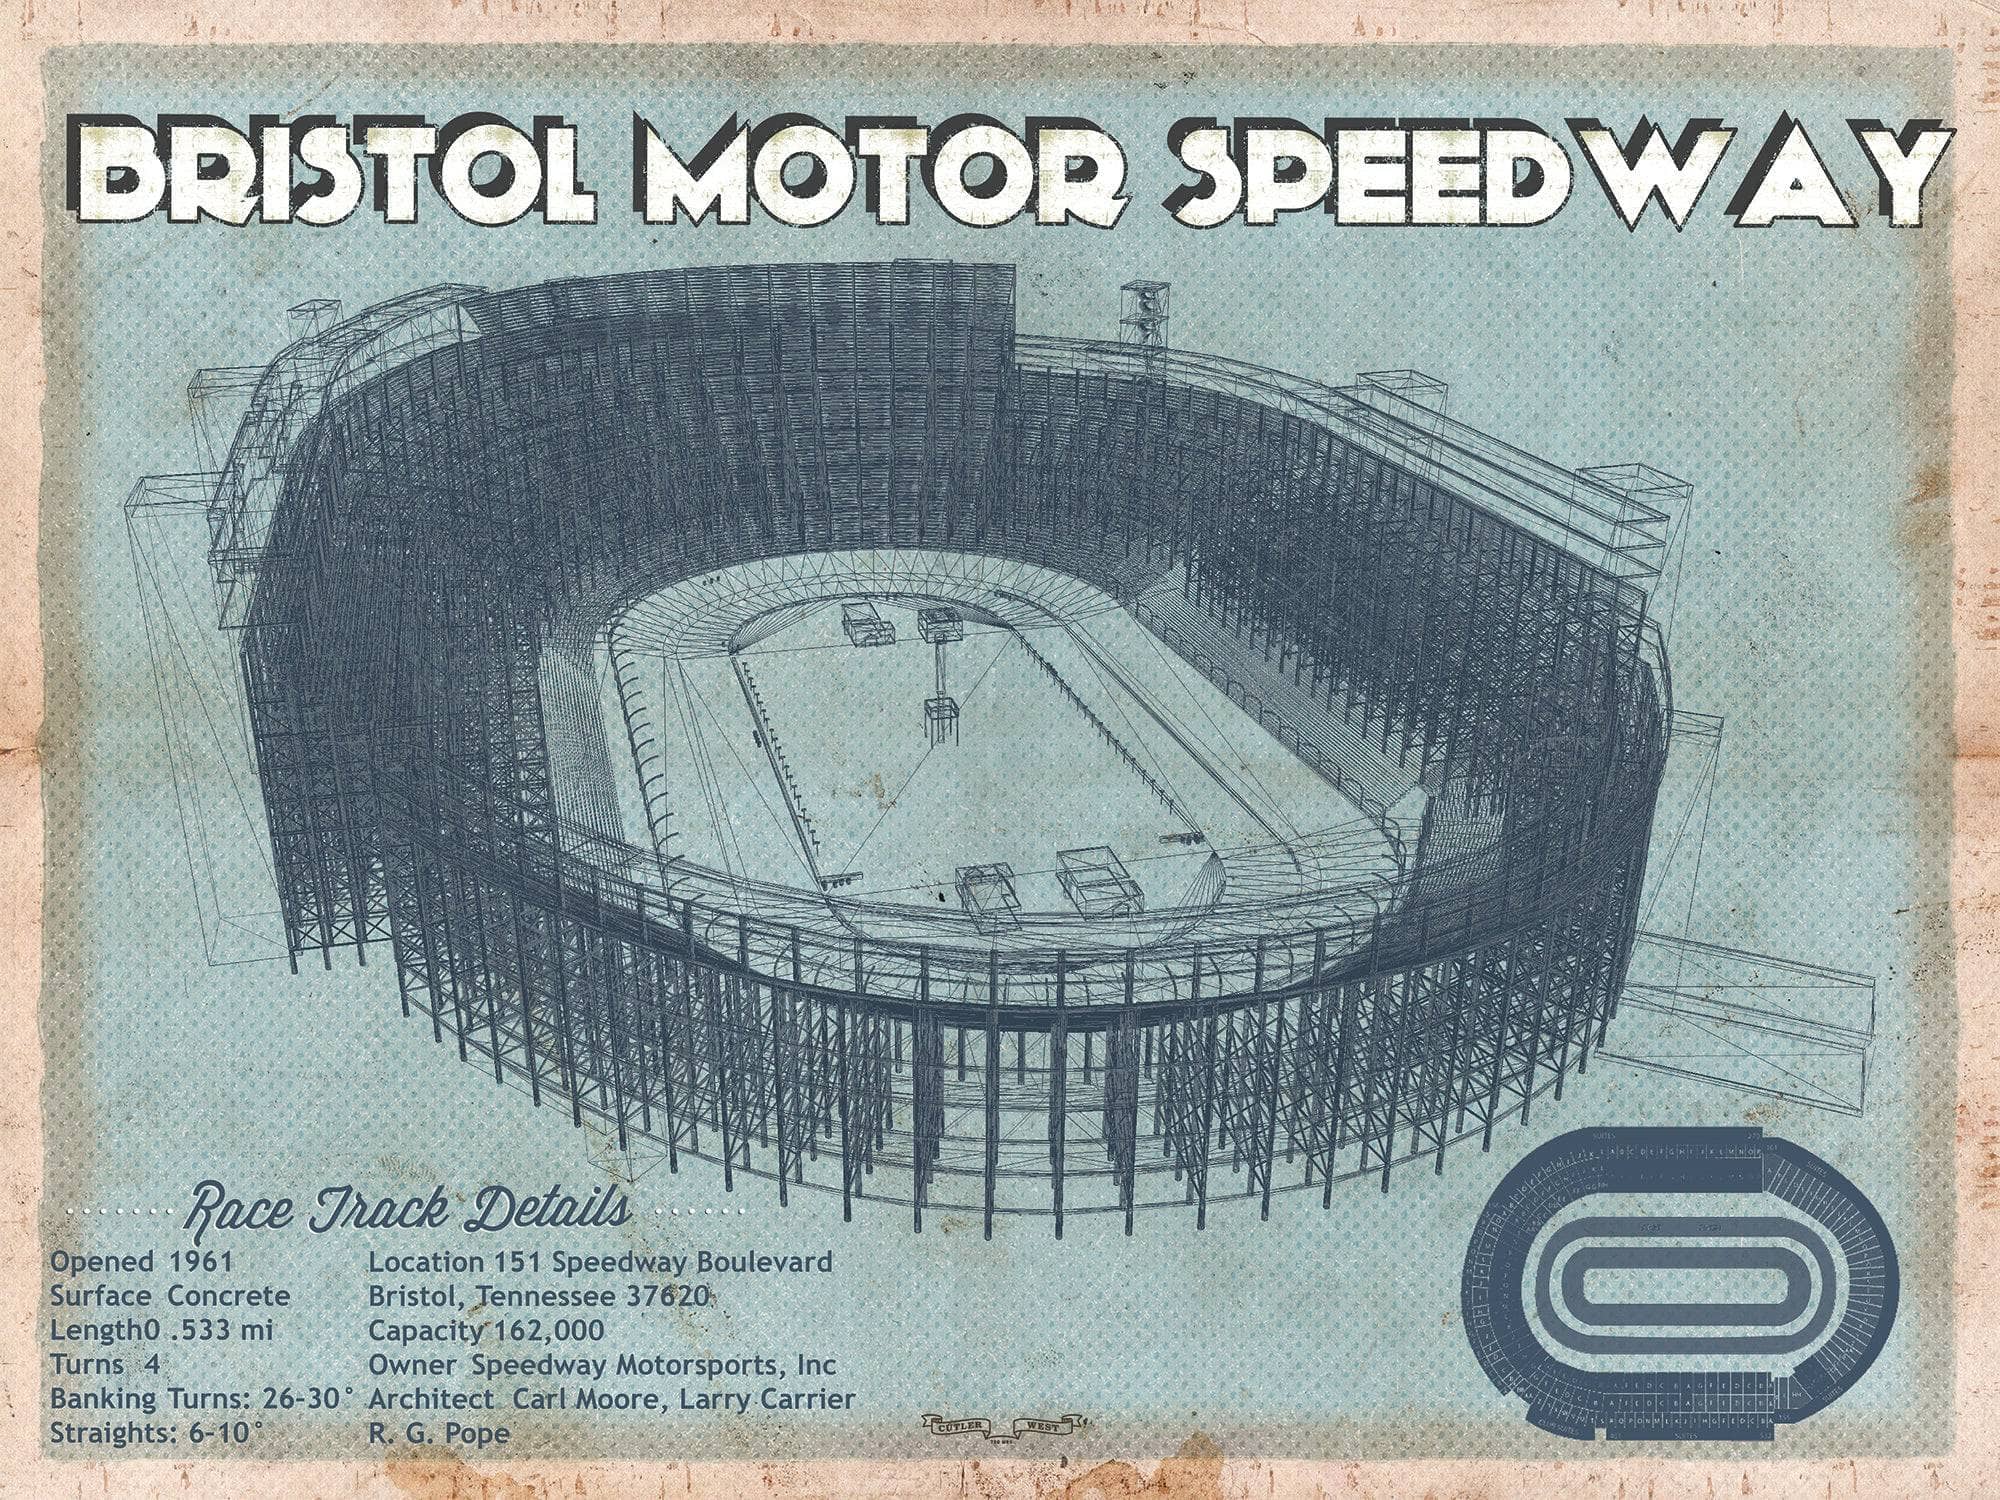 Cutler West Racetrack Collection 14" x 11" / Unframed Bristol Speedway Blueprint NASCAR Race Track Print 716409711-TOP